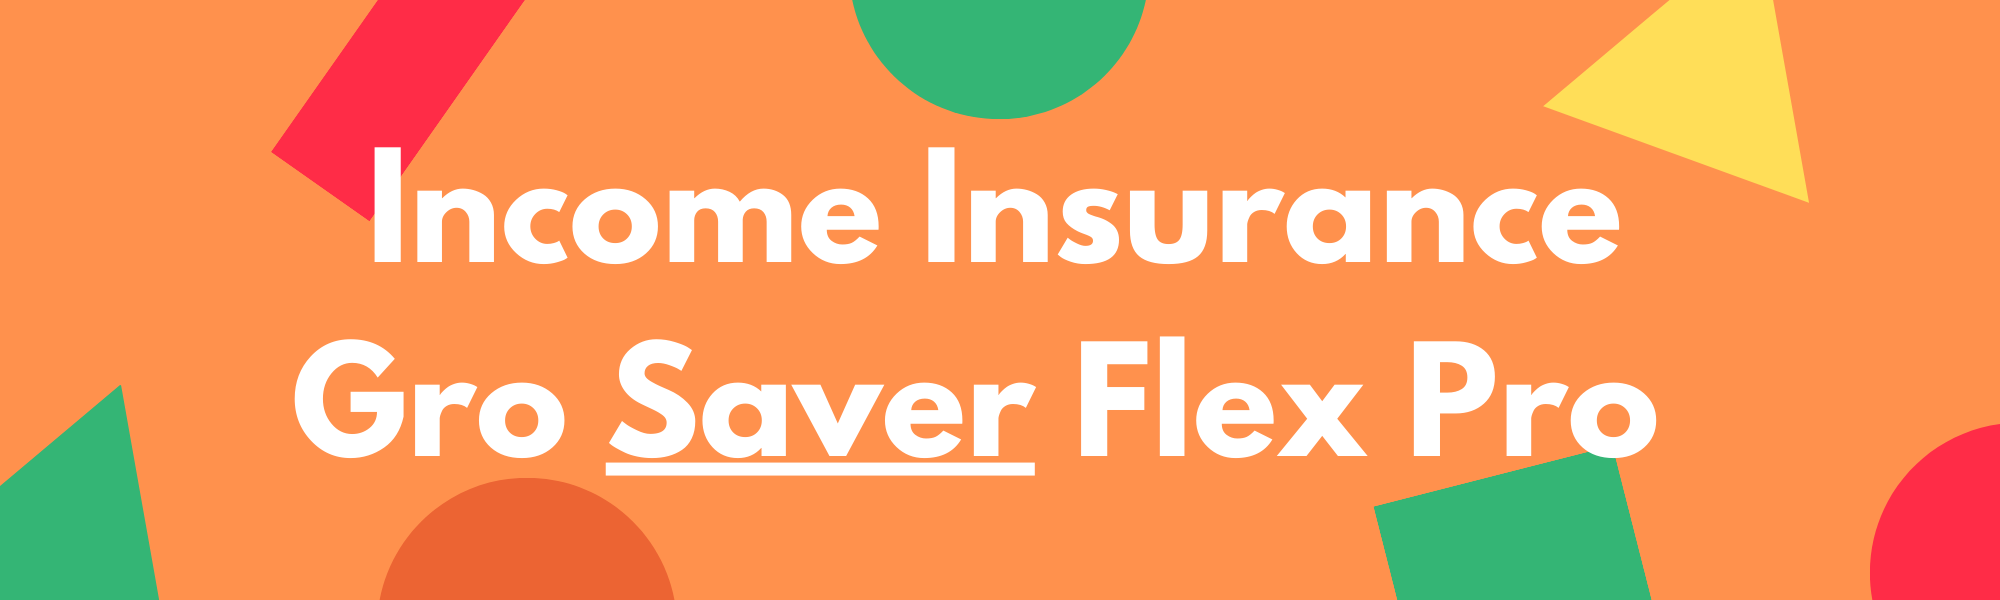 Income Insurance Gro Saver Flex Pro - Best SRS Endowment Plan